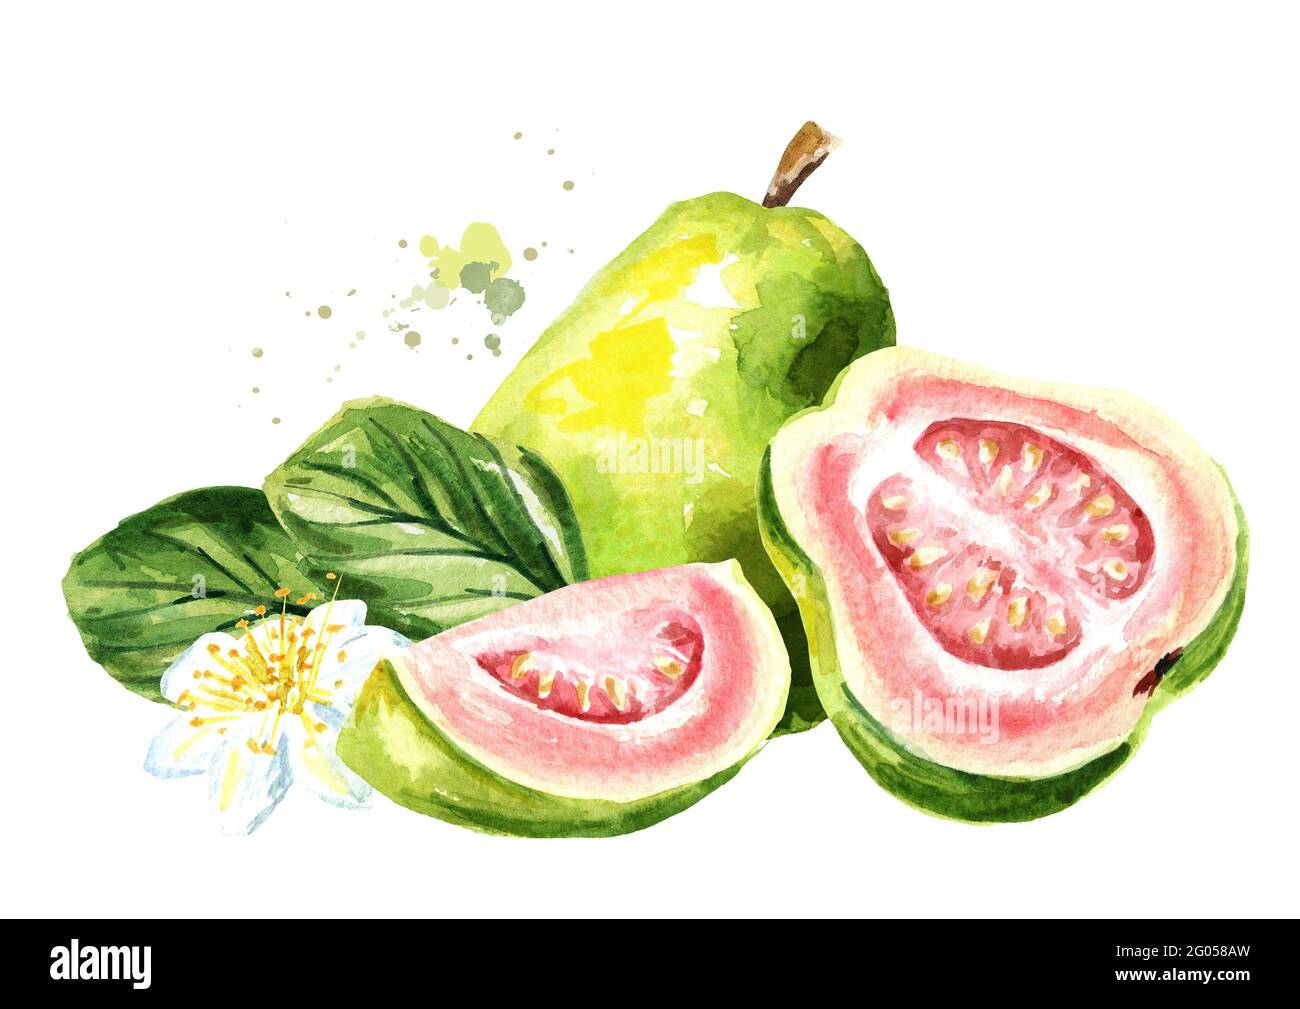 Fruit de goyave mûr rose avec feuilles et fleurs. Illustration aquarelle dessinée à la main, isolée sur fond blanc Banque D'Images